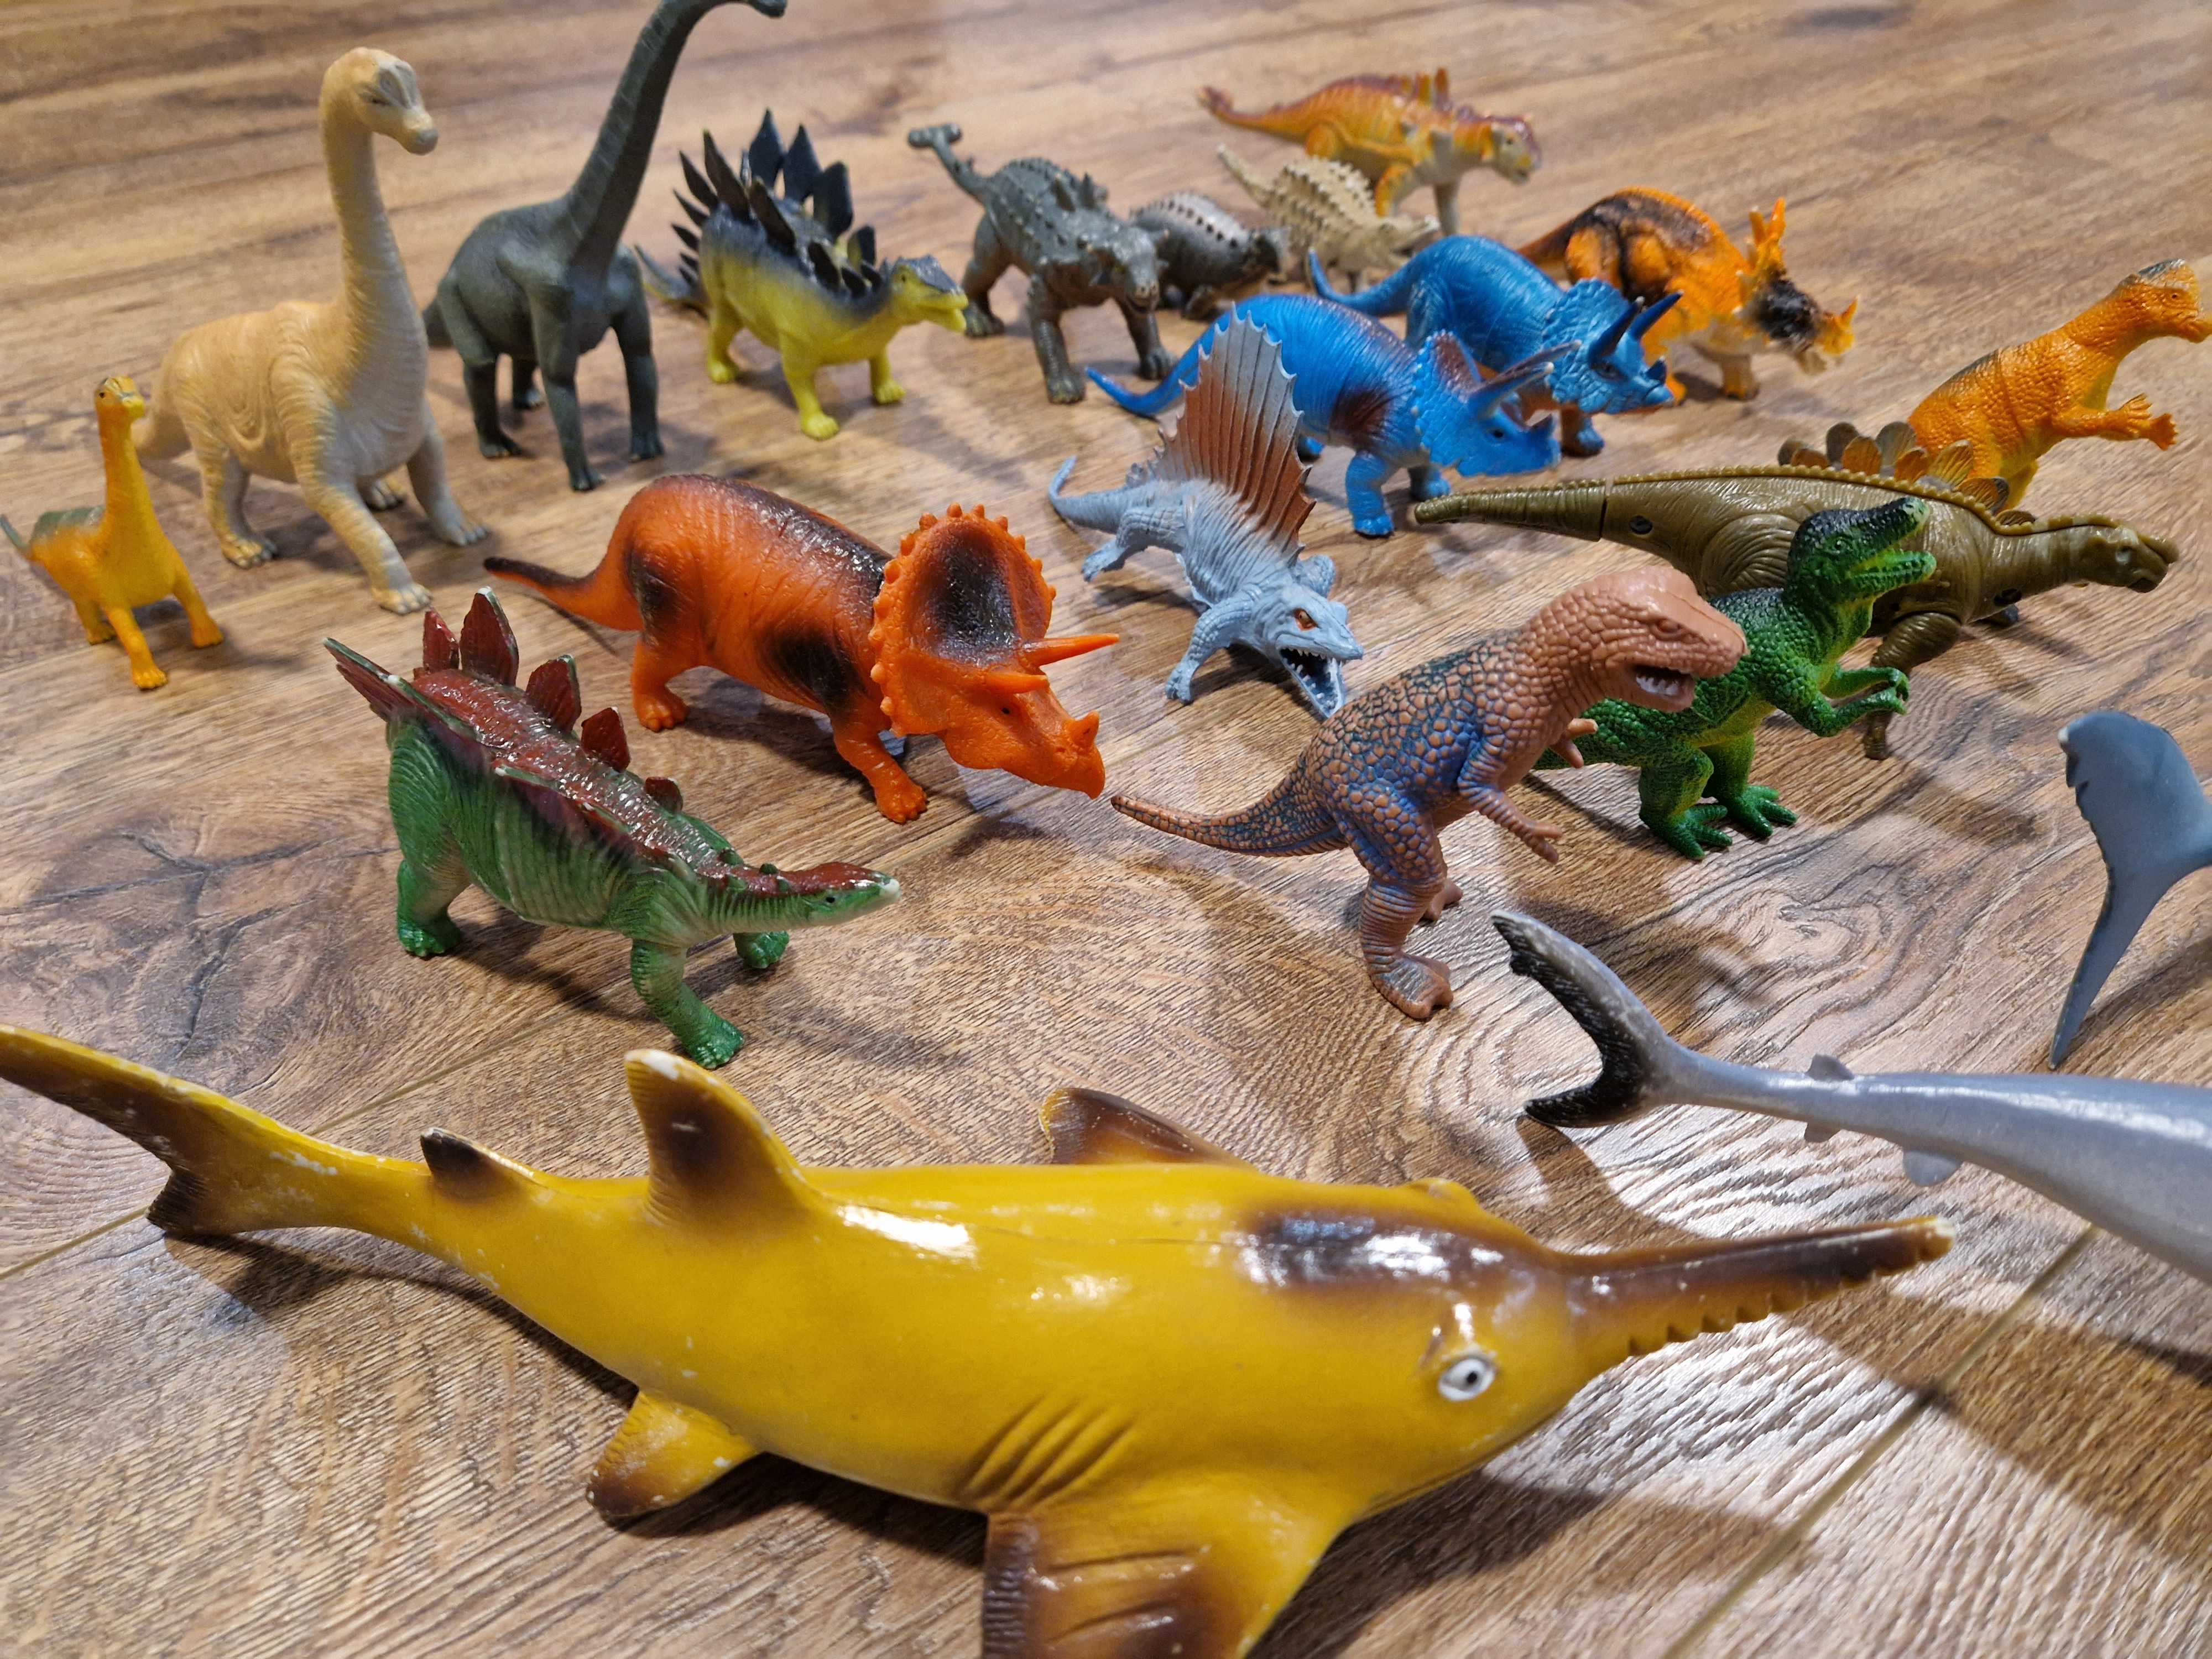 Dinozaury figurki średnie i małe 19szt + rekiny